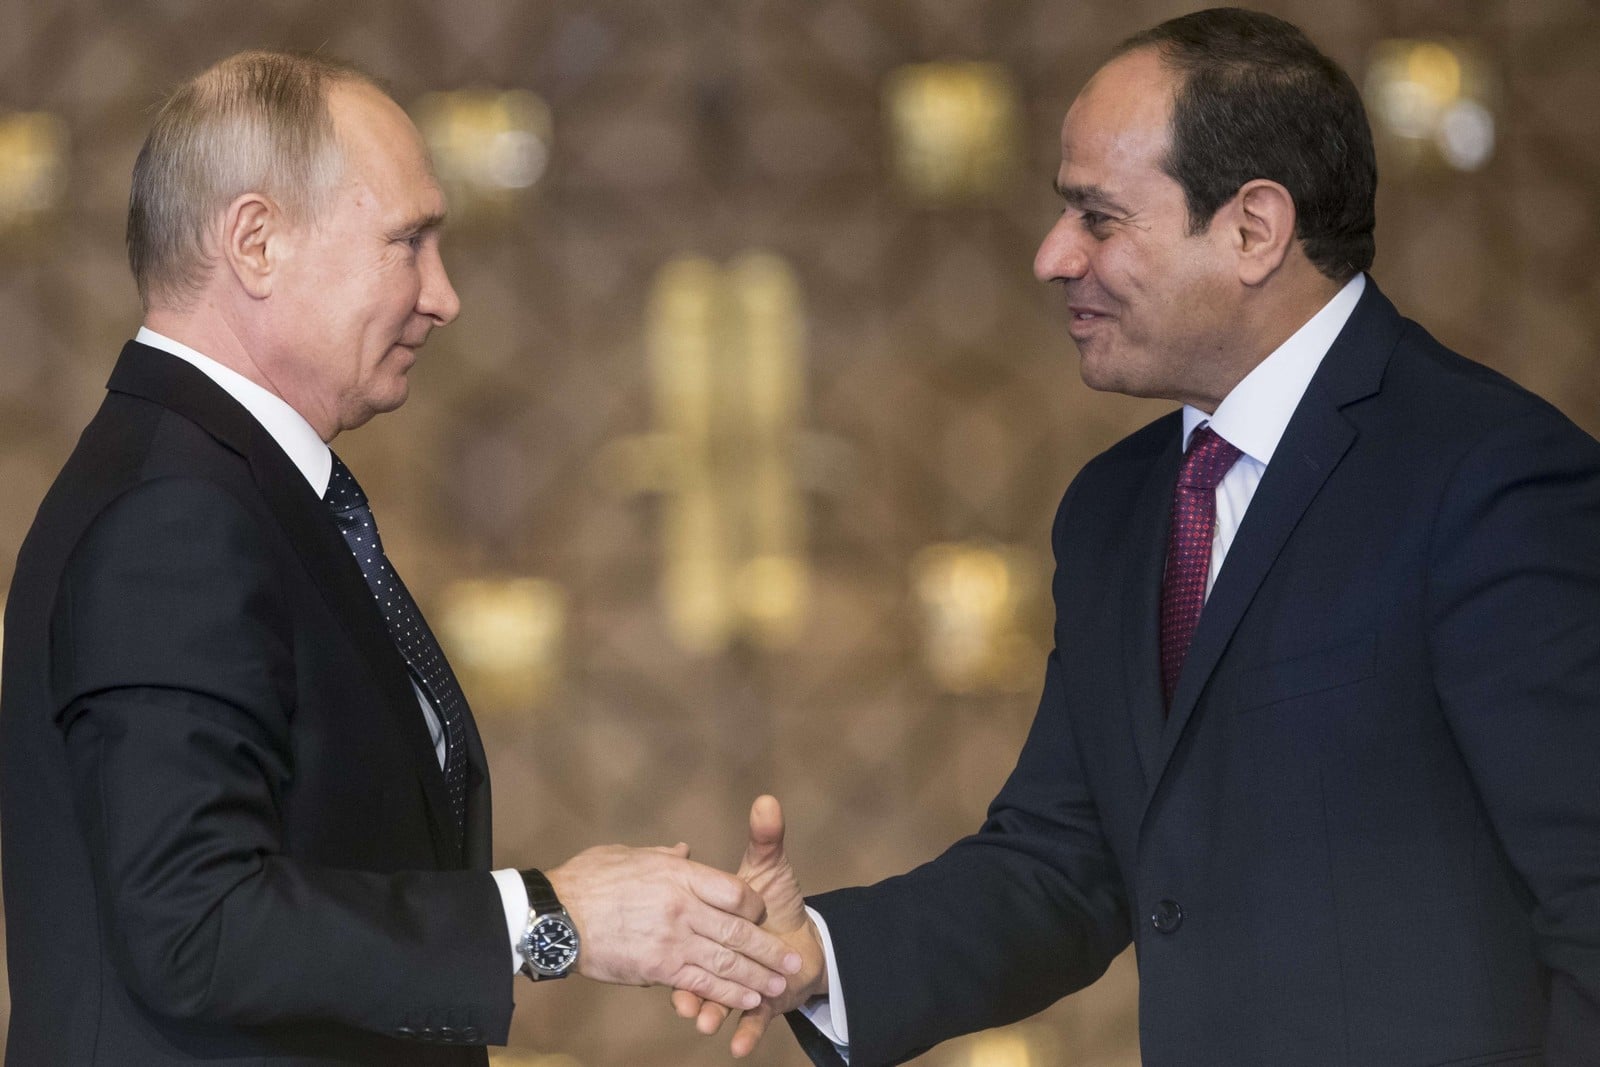 Vladimir Poutine et le président égyptien Abdel-Fattah El-Sissi, lors d'une rencontre au Caire, le 11 décembre 2017,
Auteurs  : Alexander Zemlianichenko/AP/SIPA,
Numéro de reportage  : AP22140317_000010.